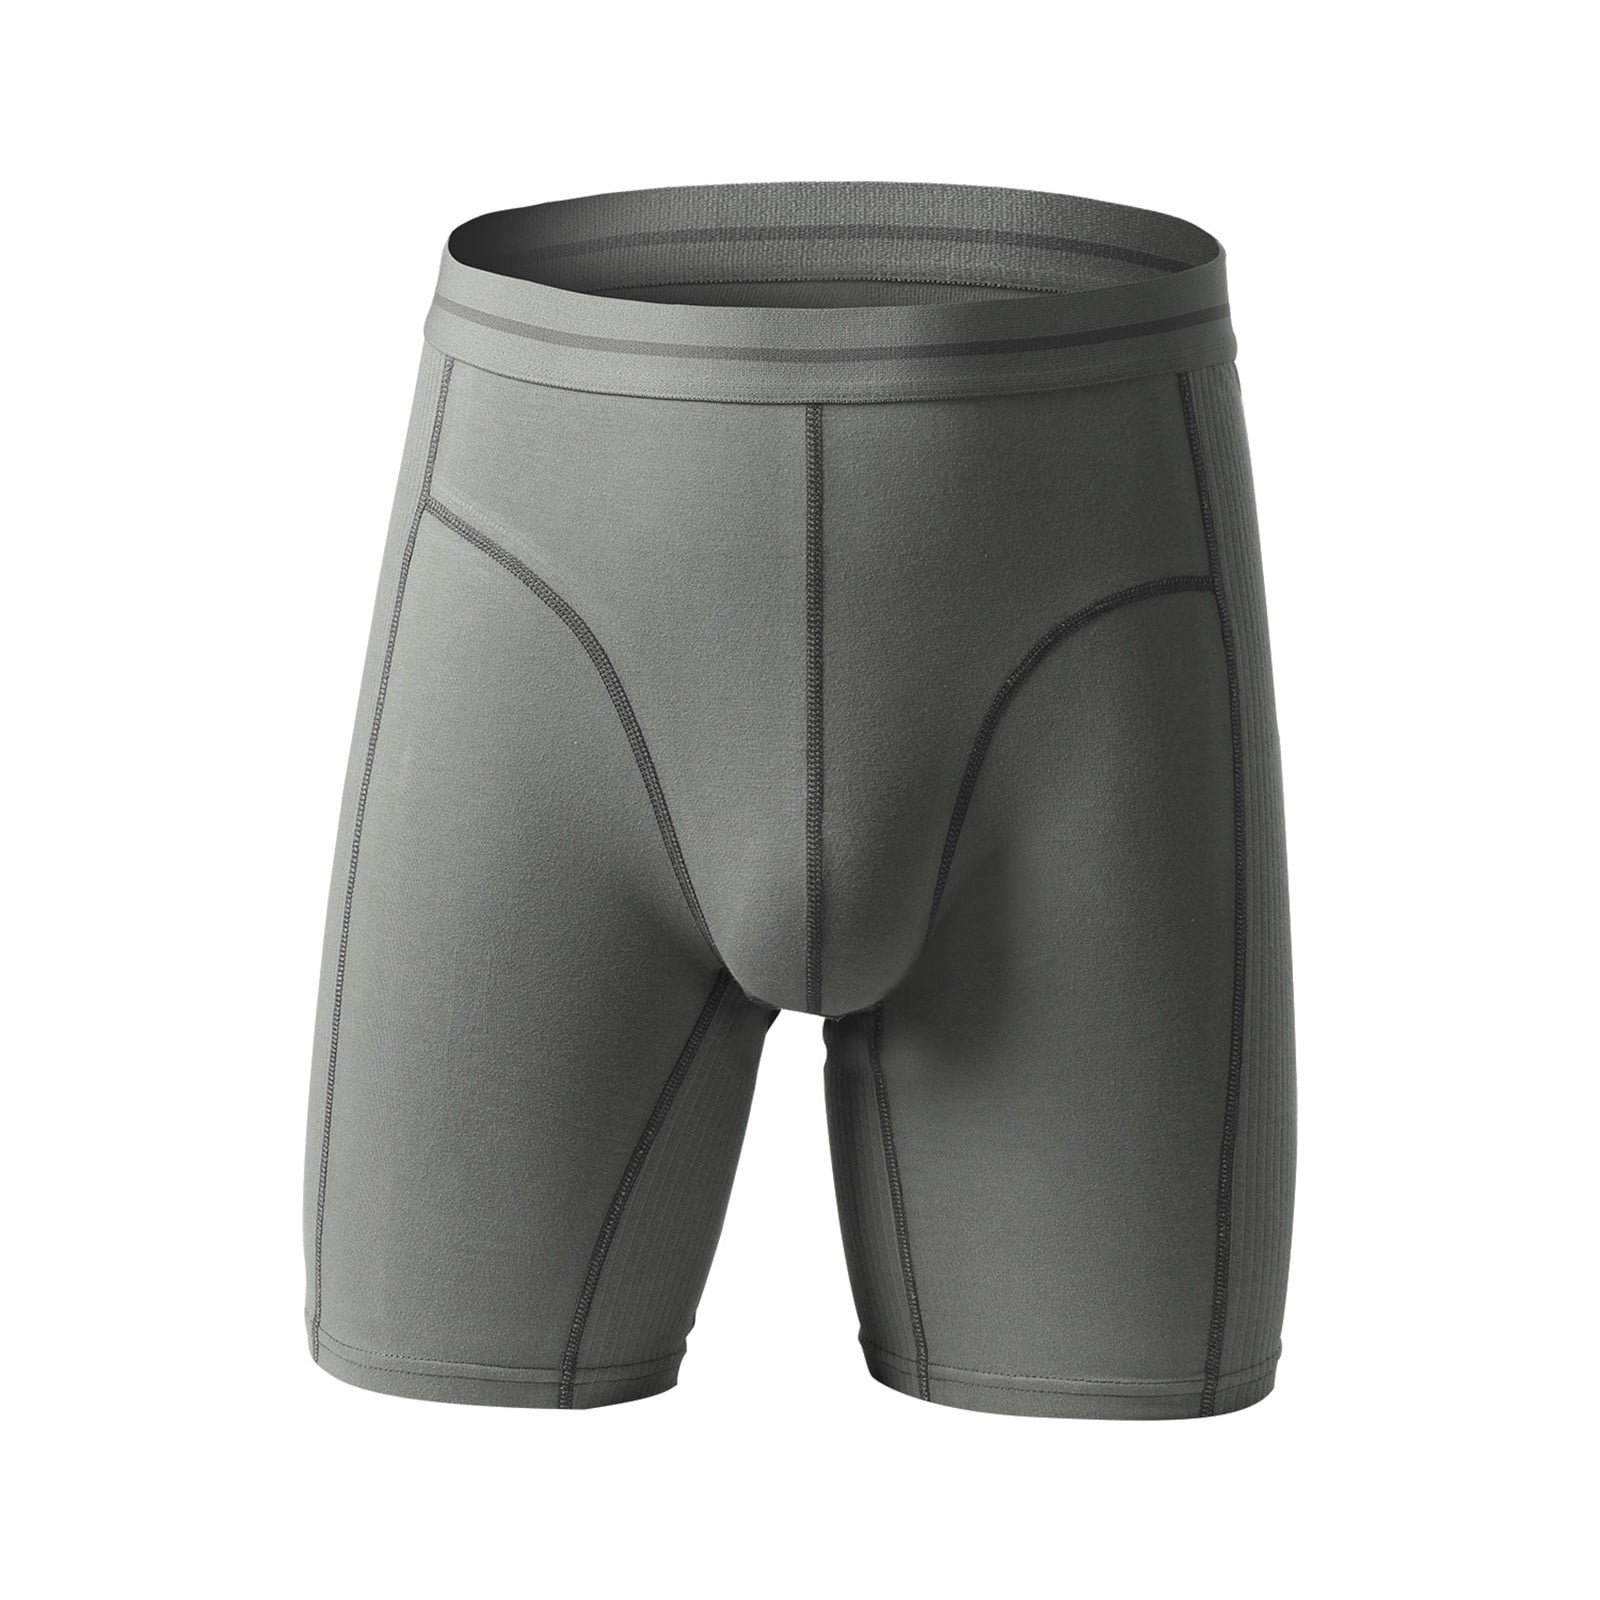 AdBFJAF Panties Pack Thong Male Panties for Men Mens Mid Rise Underwear ...